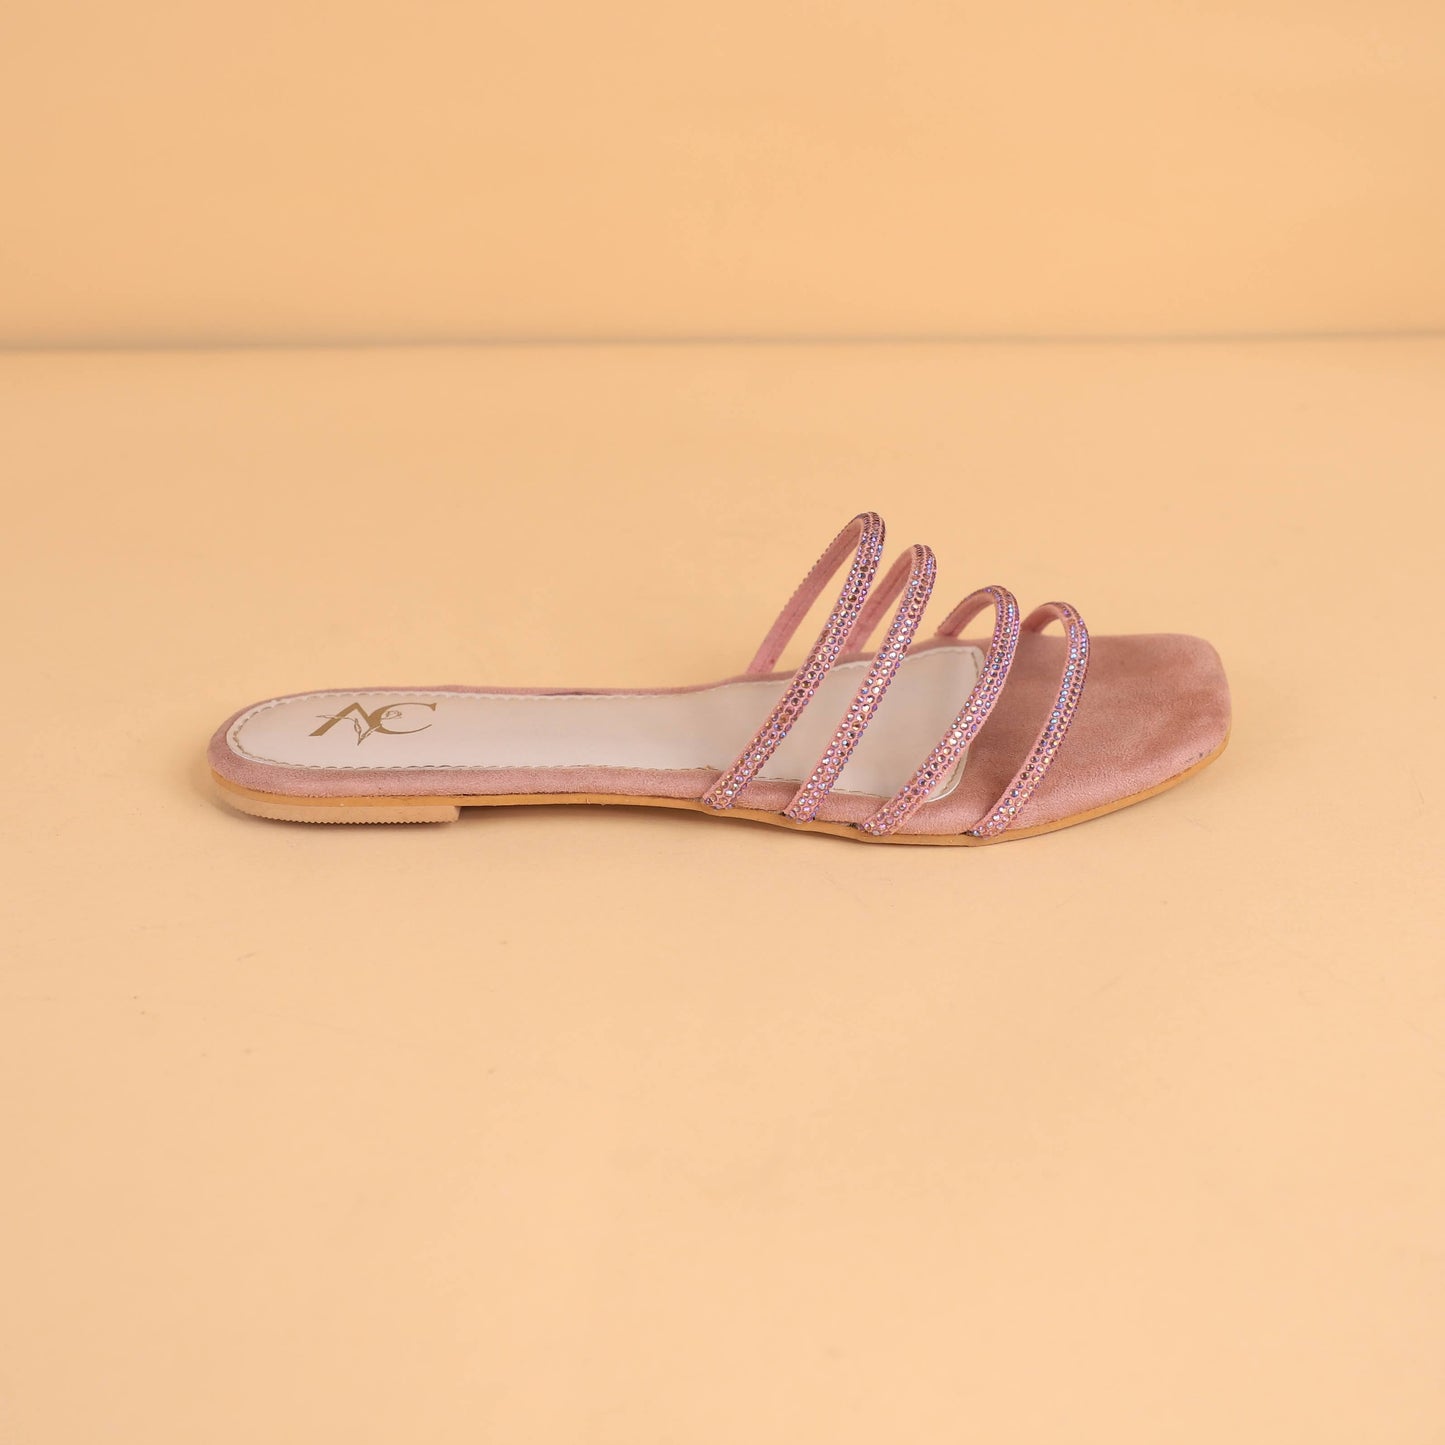 Bling On The Go – Slides For Women (Pink)